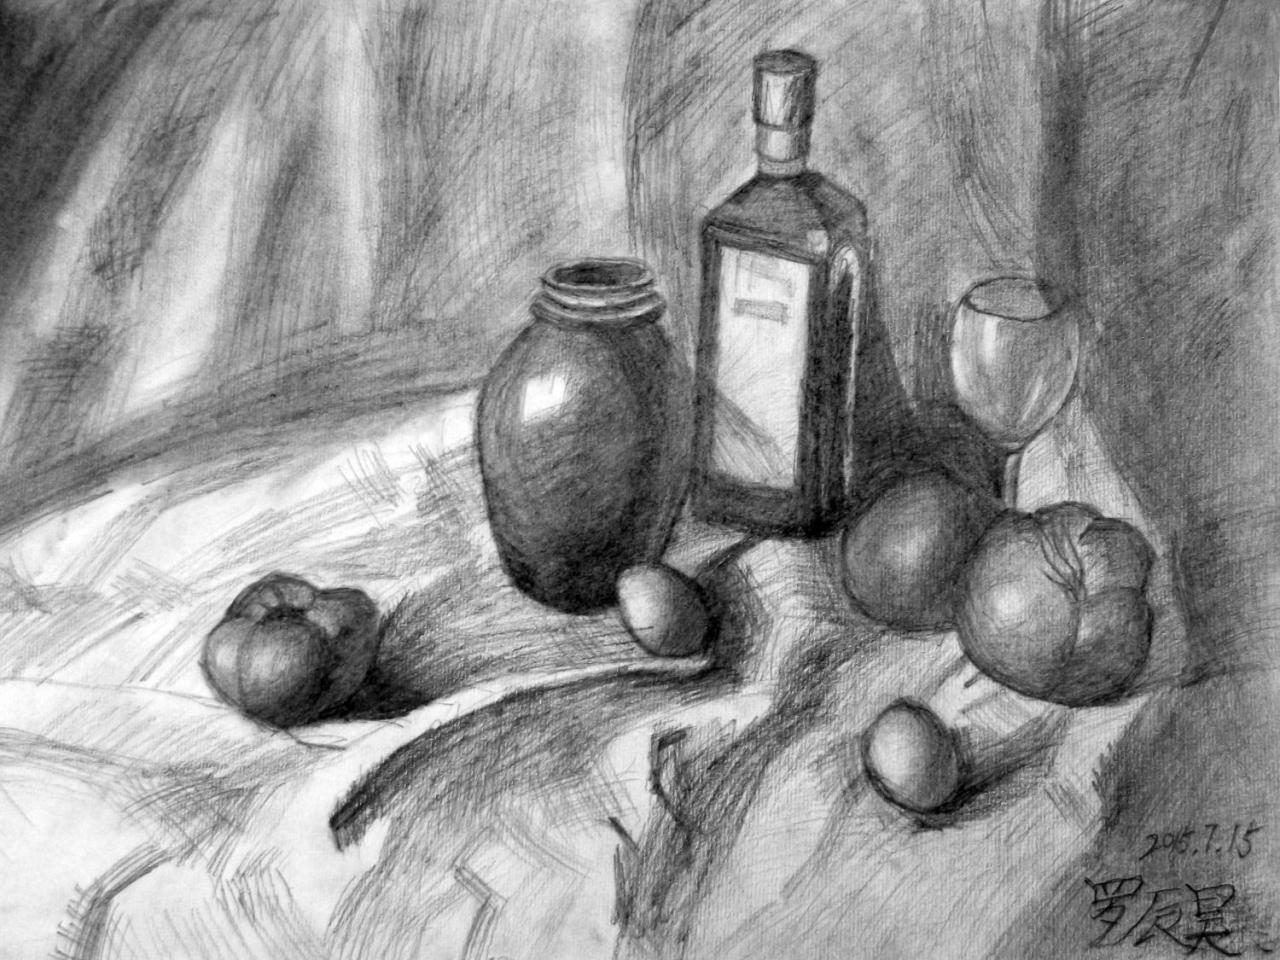 酒瓶、坛子、酒杯、鸡蛋、南瓜 静物素描 罗辰昊画